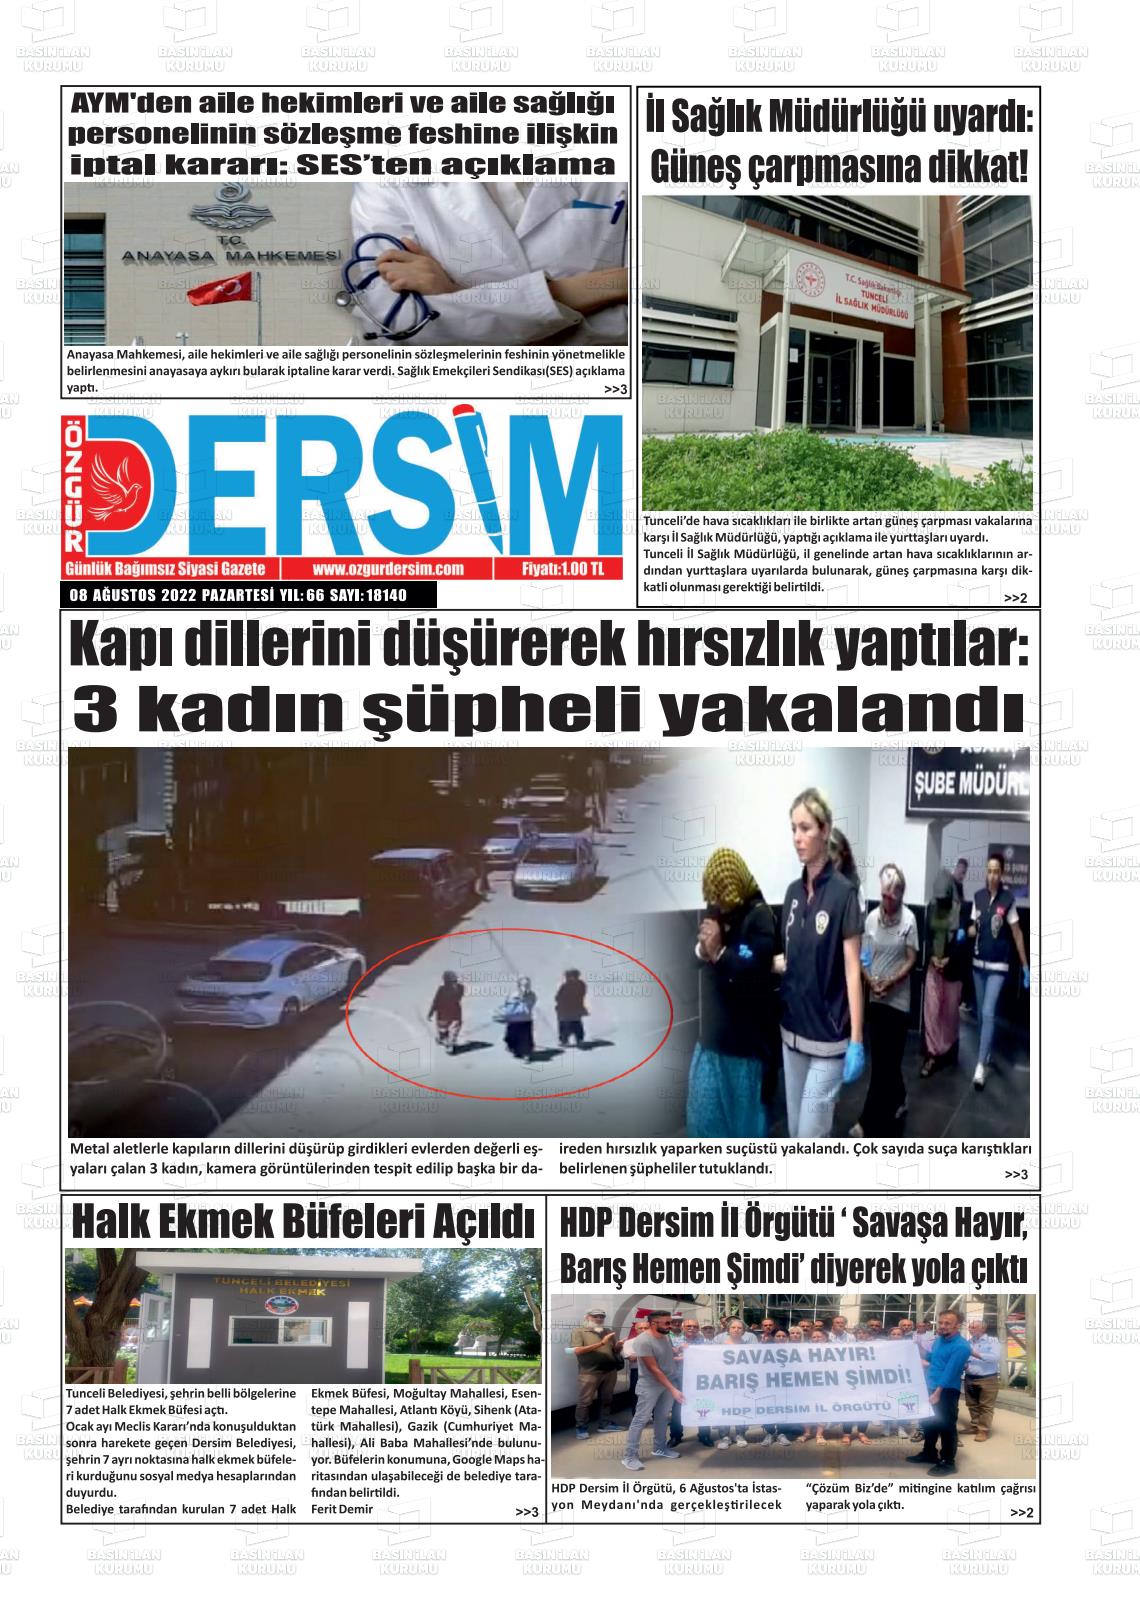 08 Ağustos 2022 Özgür Dersim Gazete Manşeti